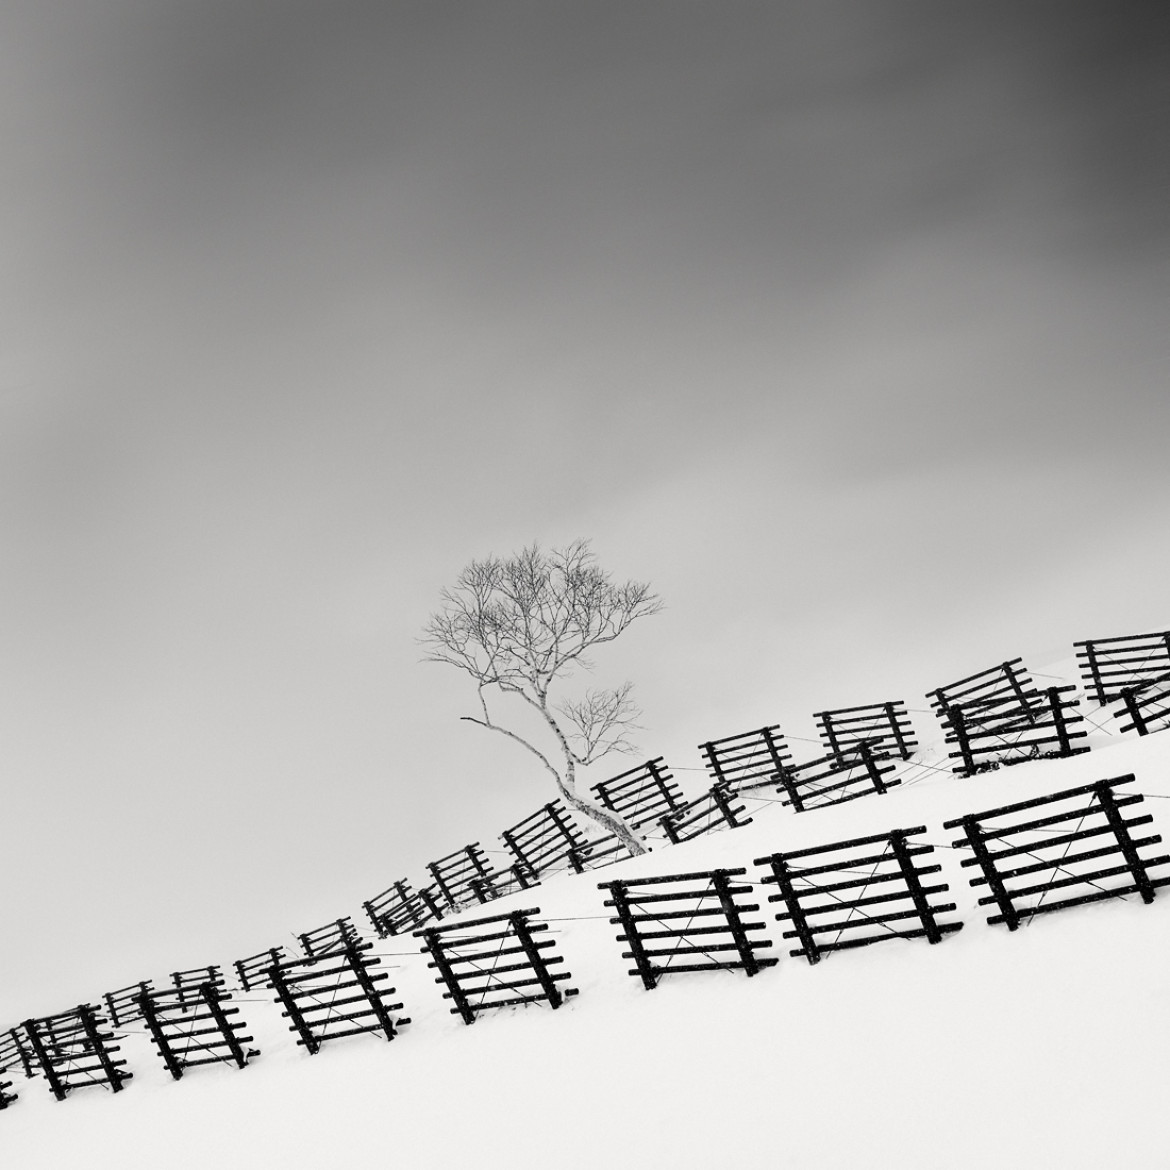 OLIVIER ROBERT - Snow Fences - II miejsce w kategorii Landscapes (zdjęcie z serii)